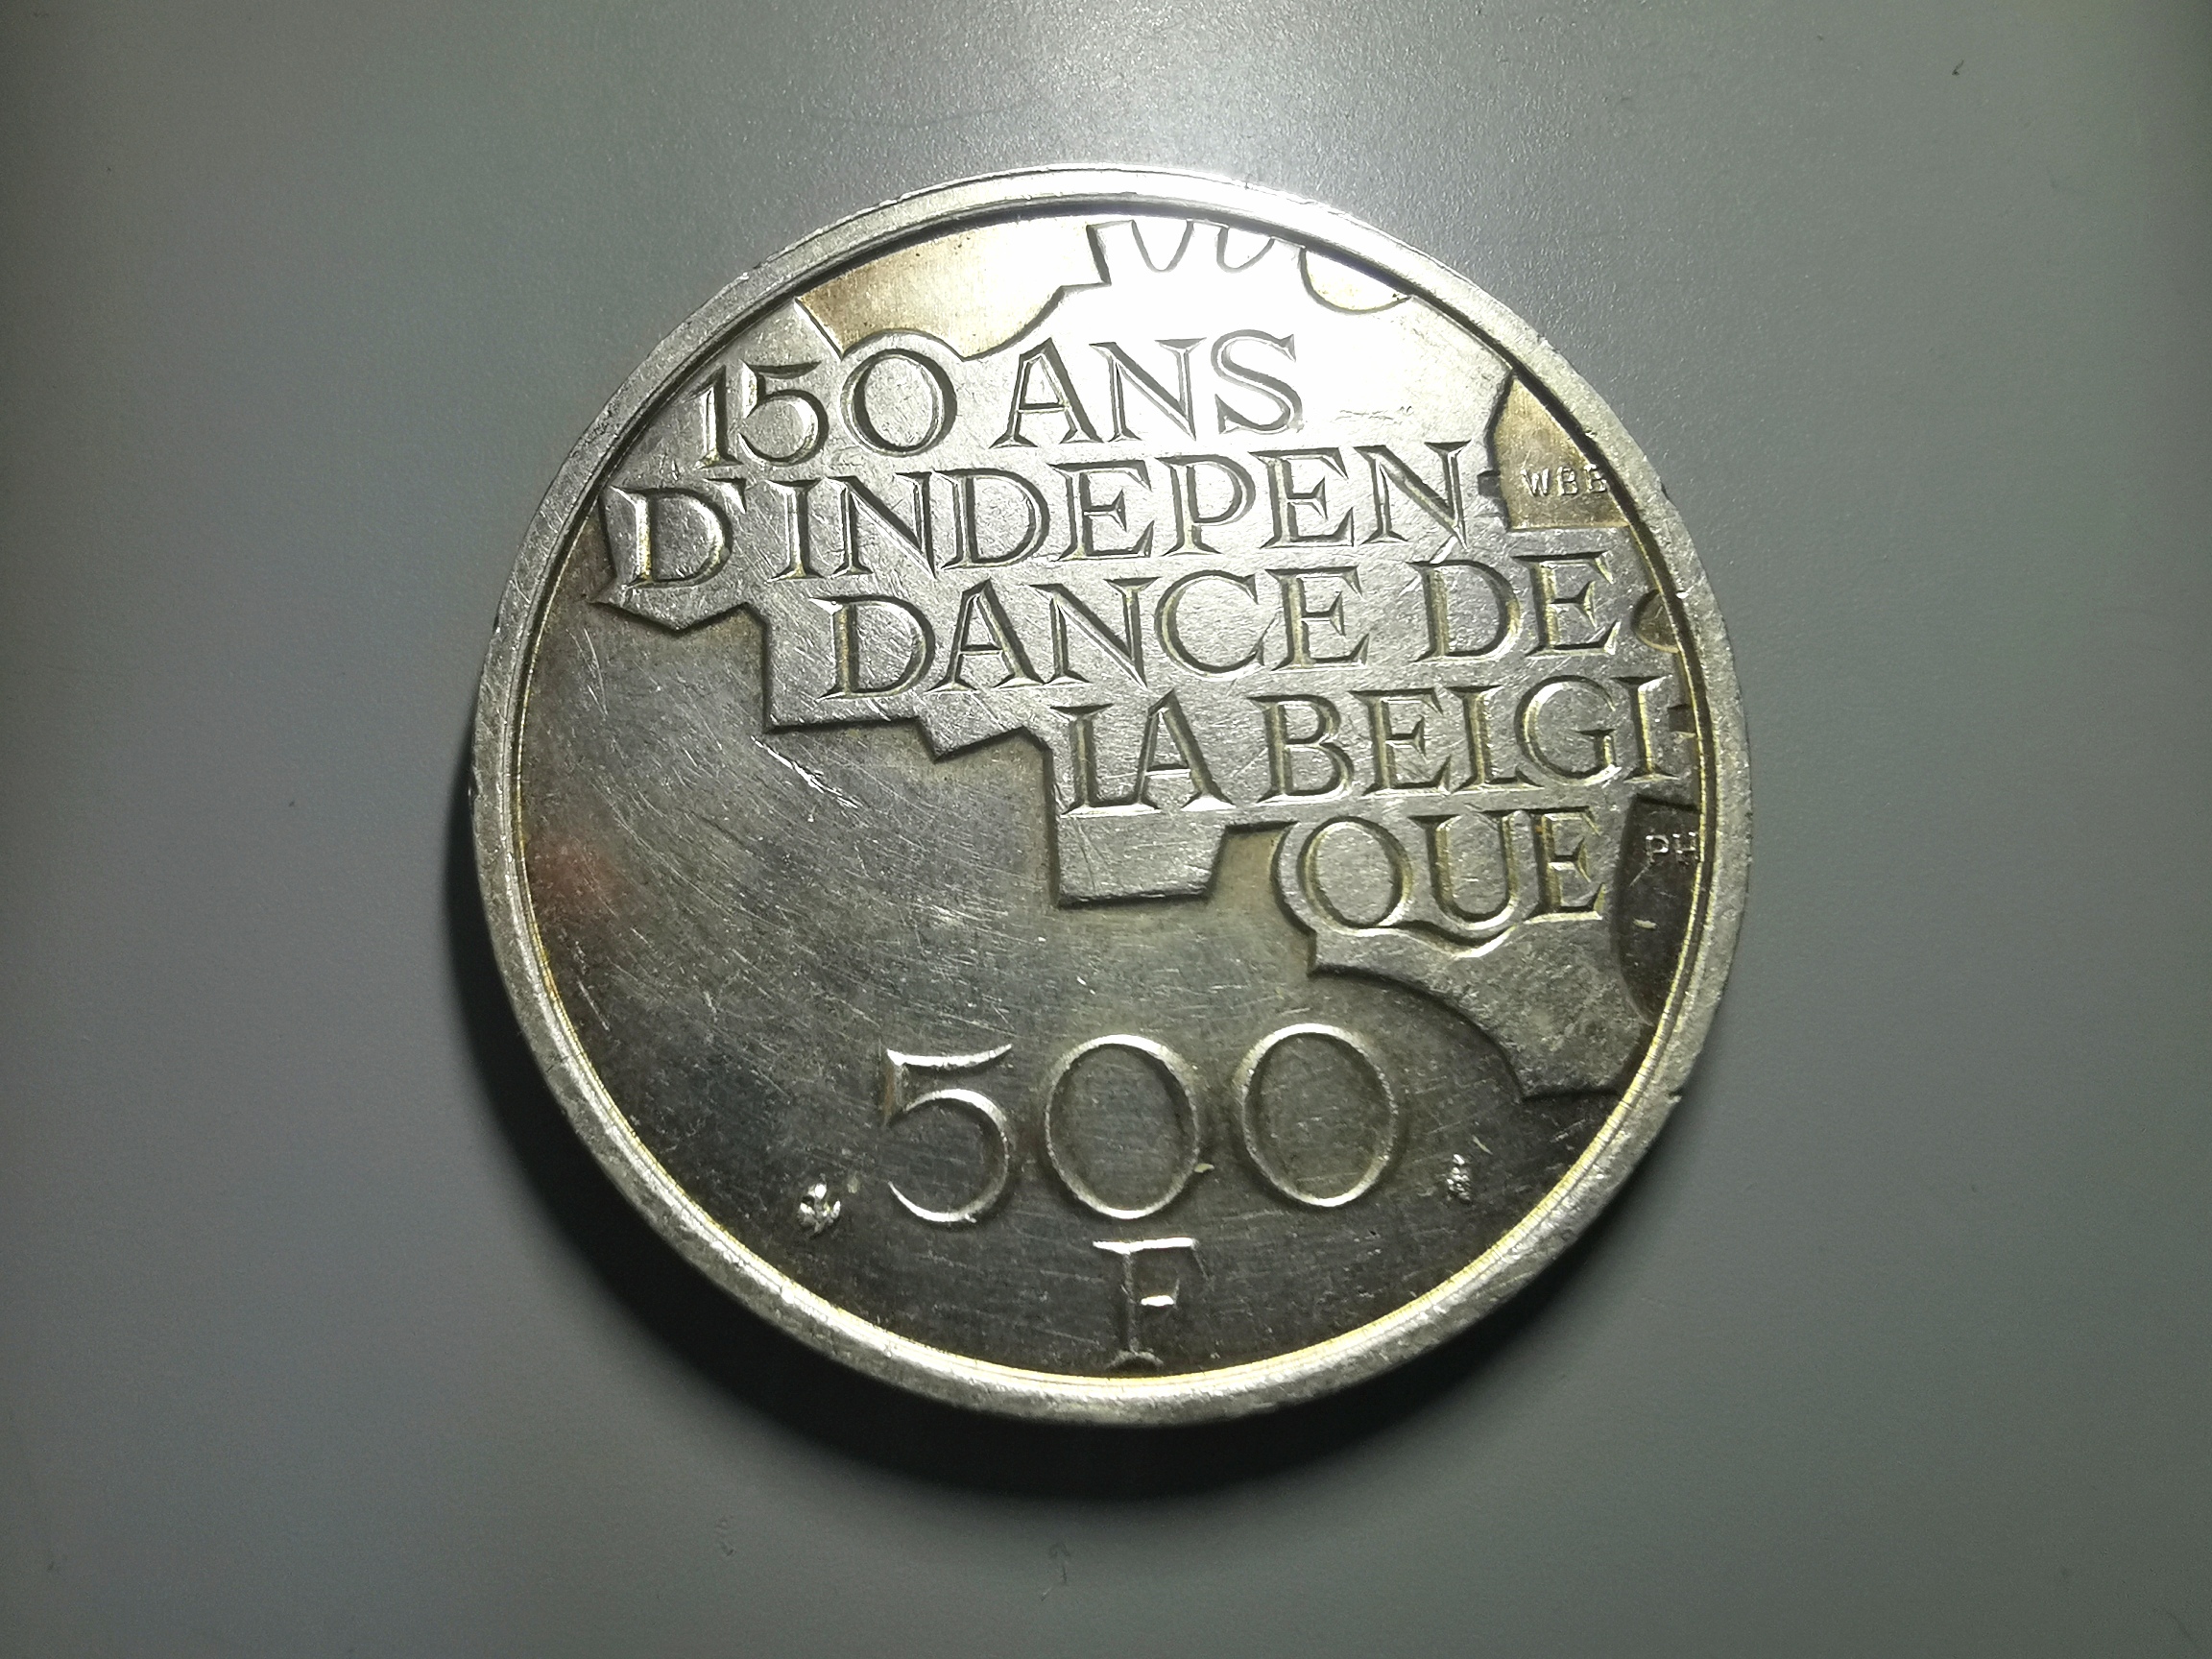 比利时法郎硬币图片